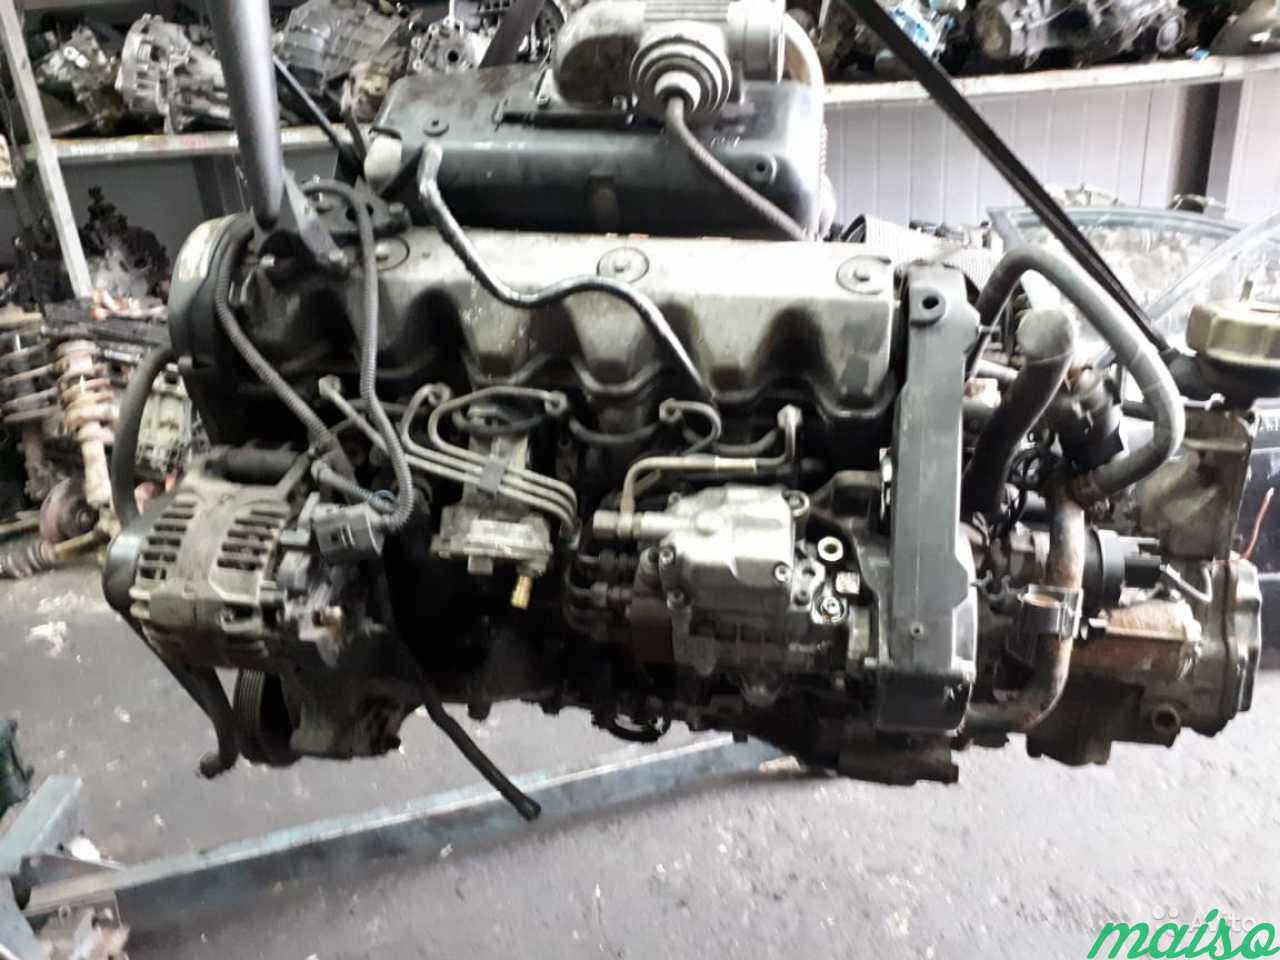 Т4 ajt. Двигатель AJT 2.5 TDI. ДВС Фольксваген Транспортер 2.5. Фольксваген т4 2.5 тди AJT. Двигатель Фольксваген т4 2.5 дизель.